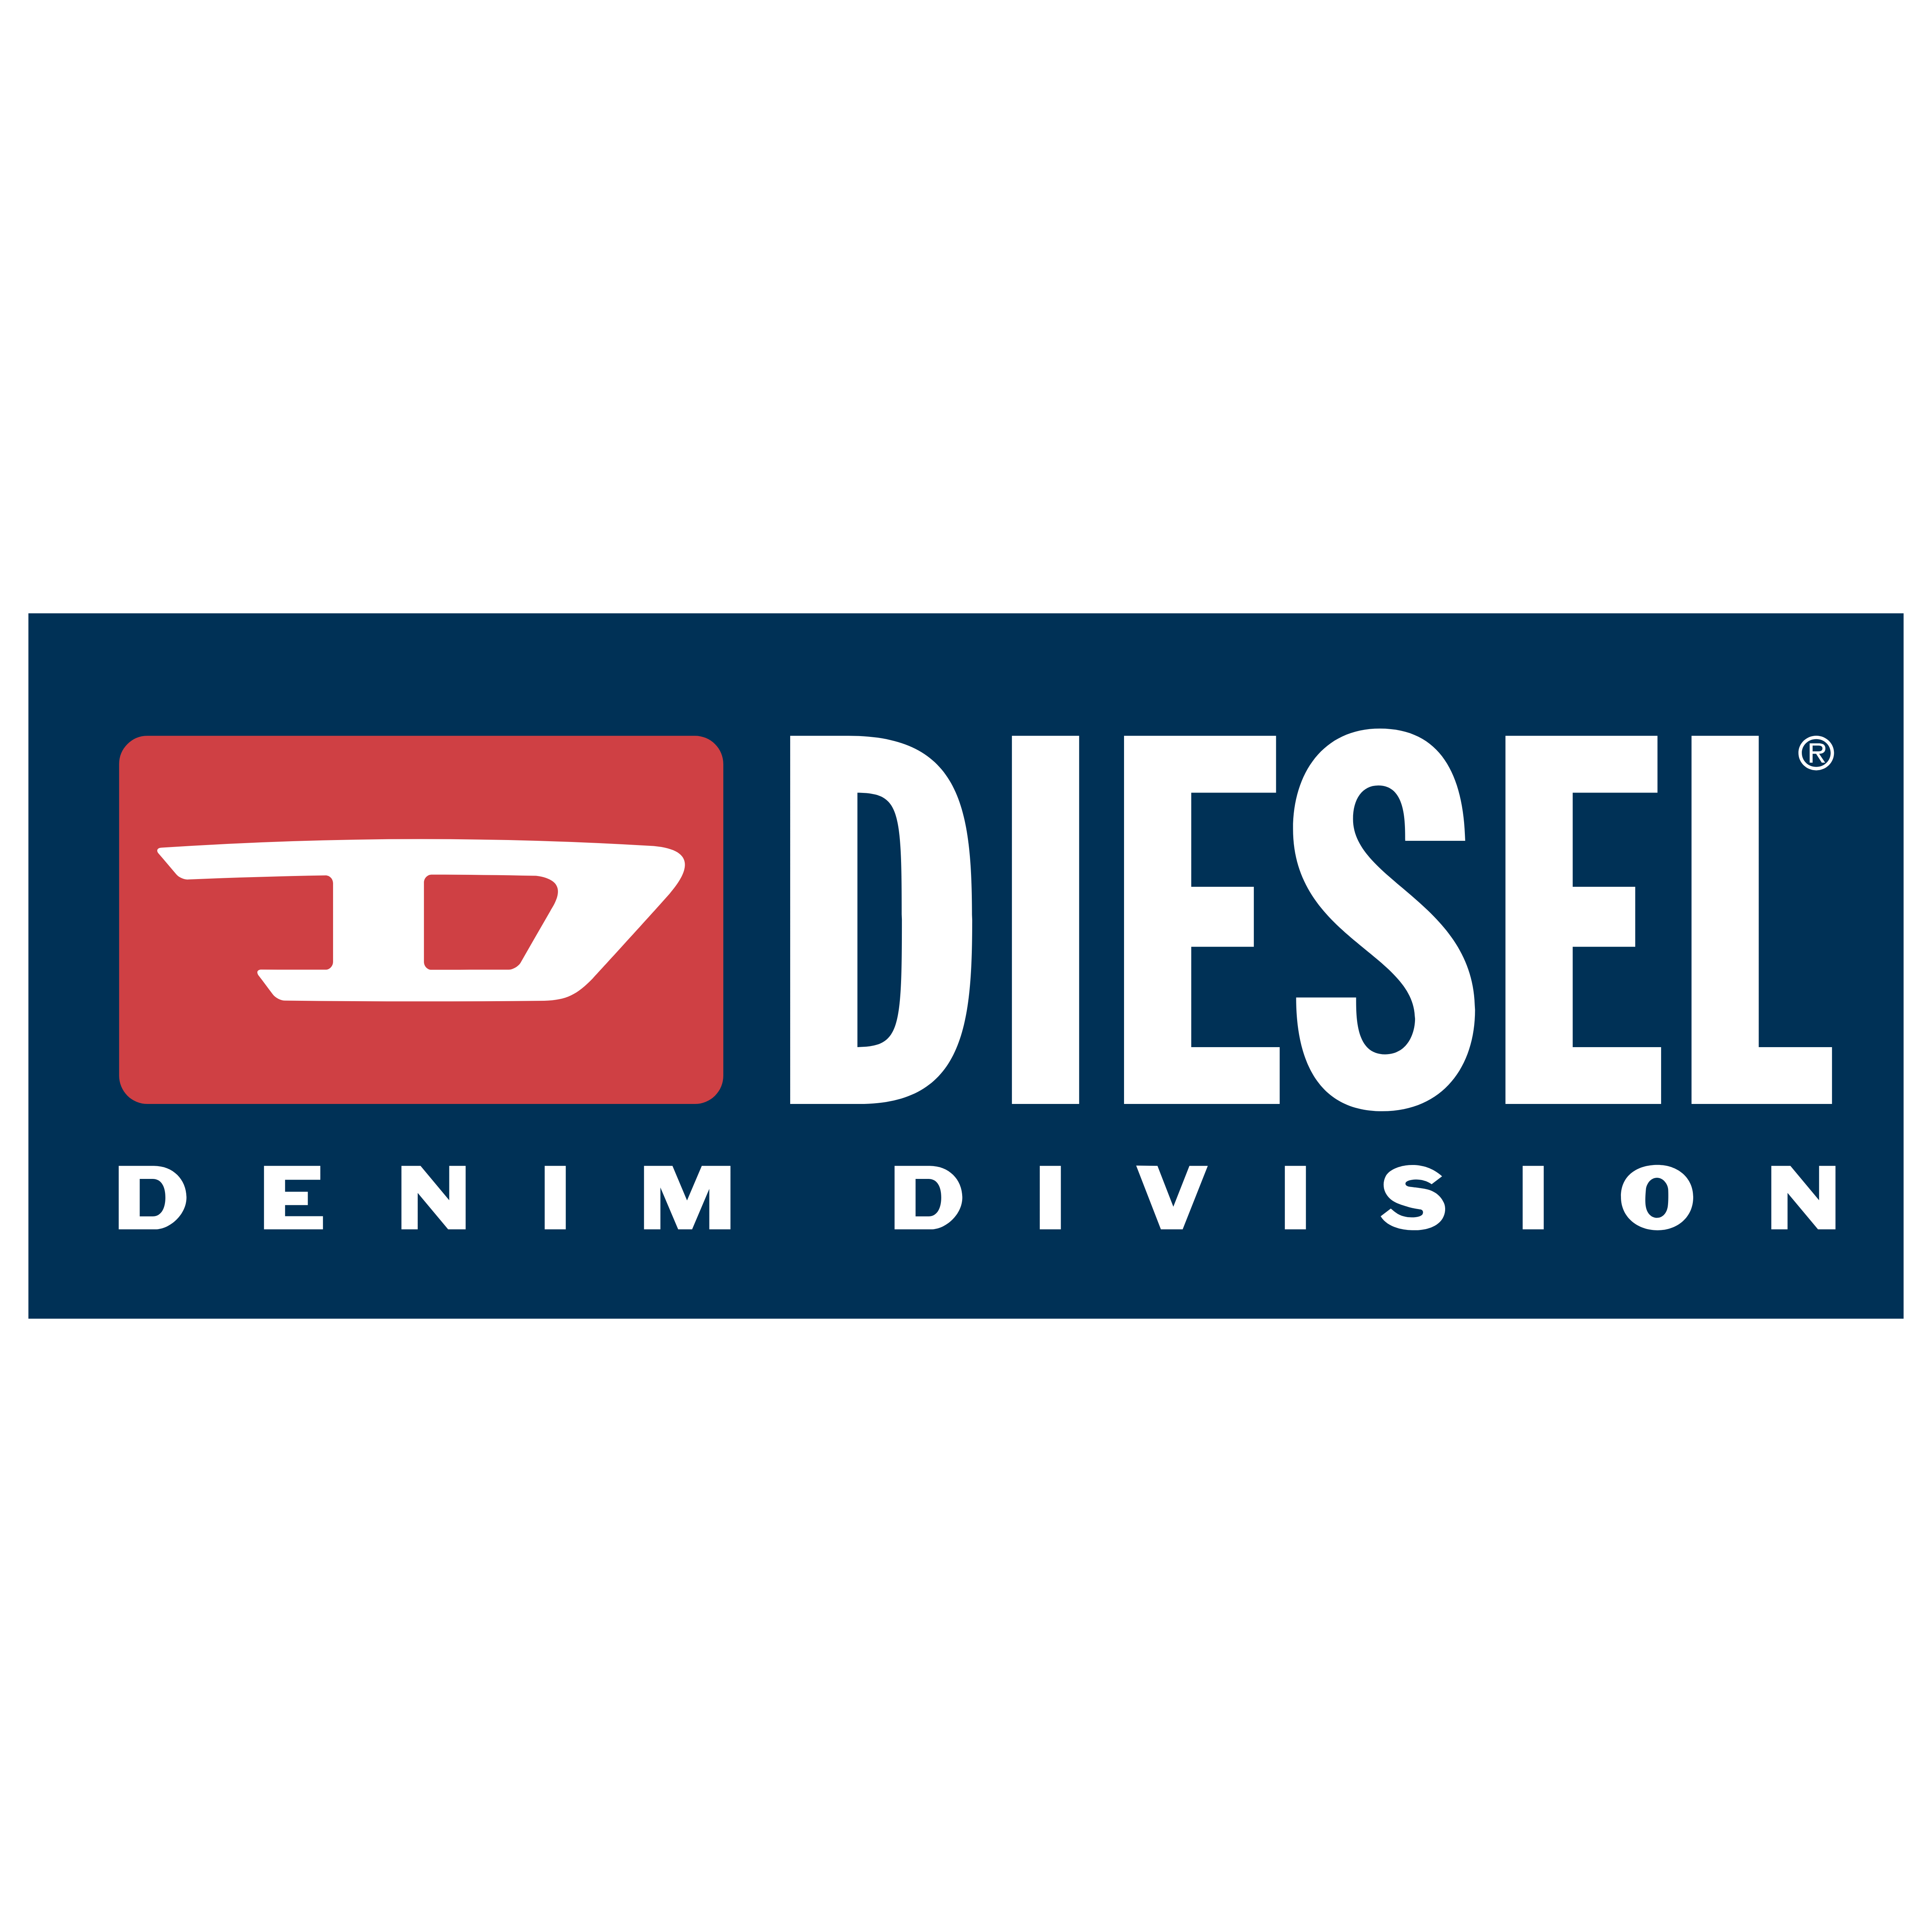 Diesel – Logos, Brands And 